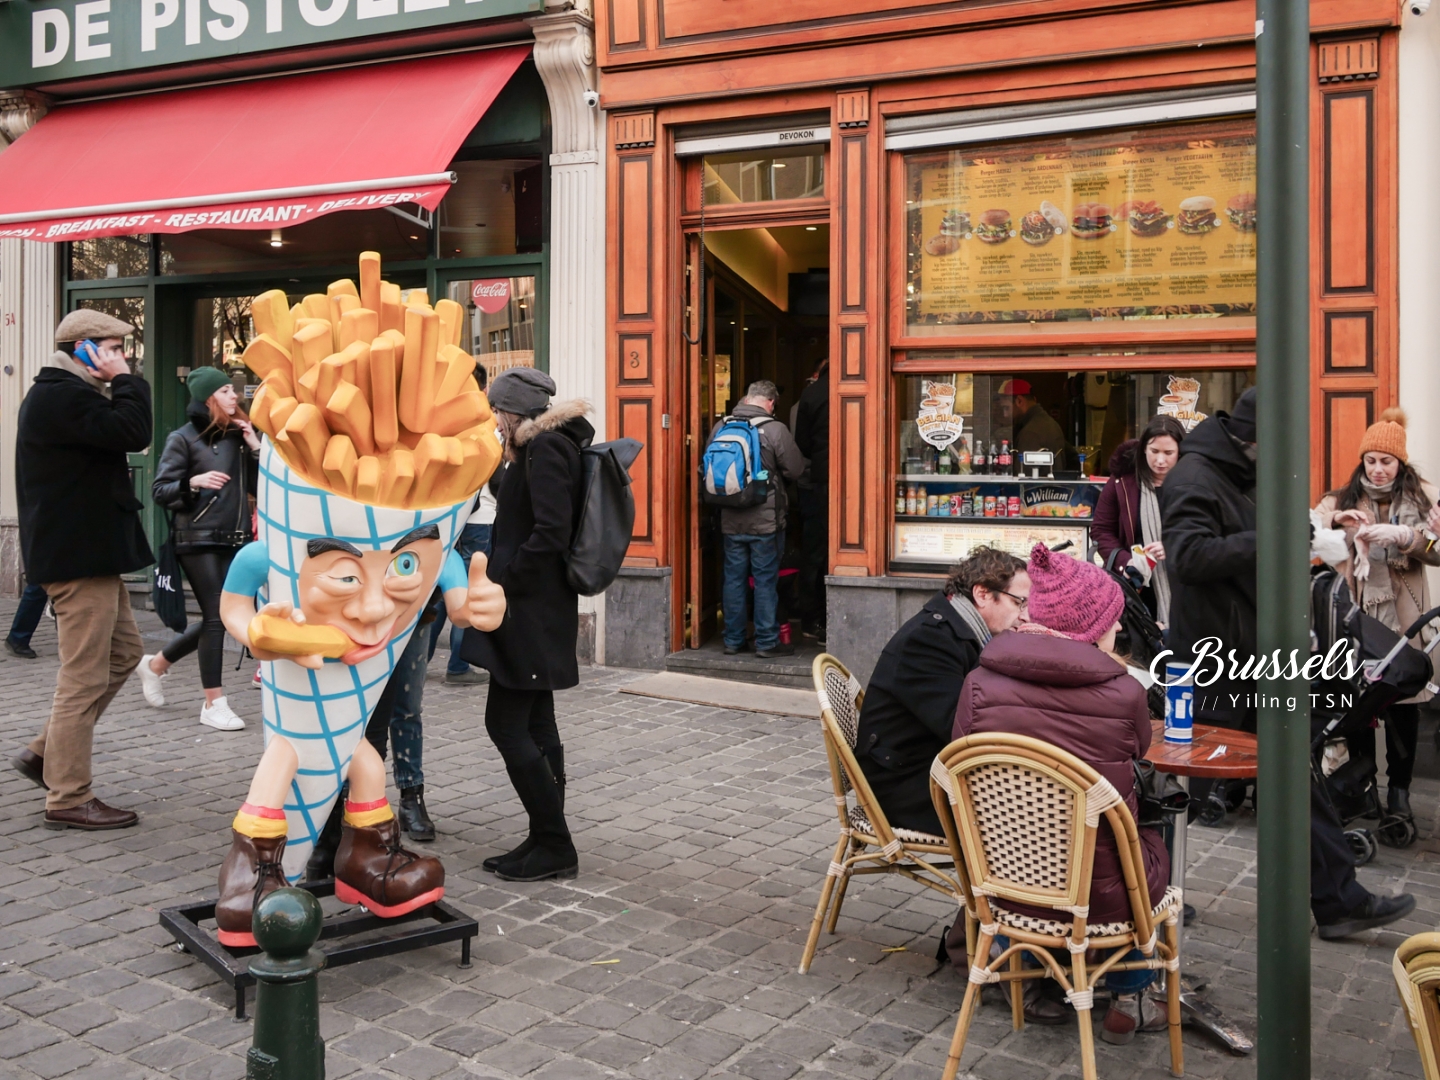 比利時布魯塞爾美食 Belgian Frites Chez Papy 比利時薯條專賣店